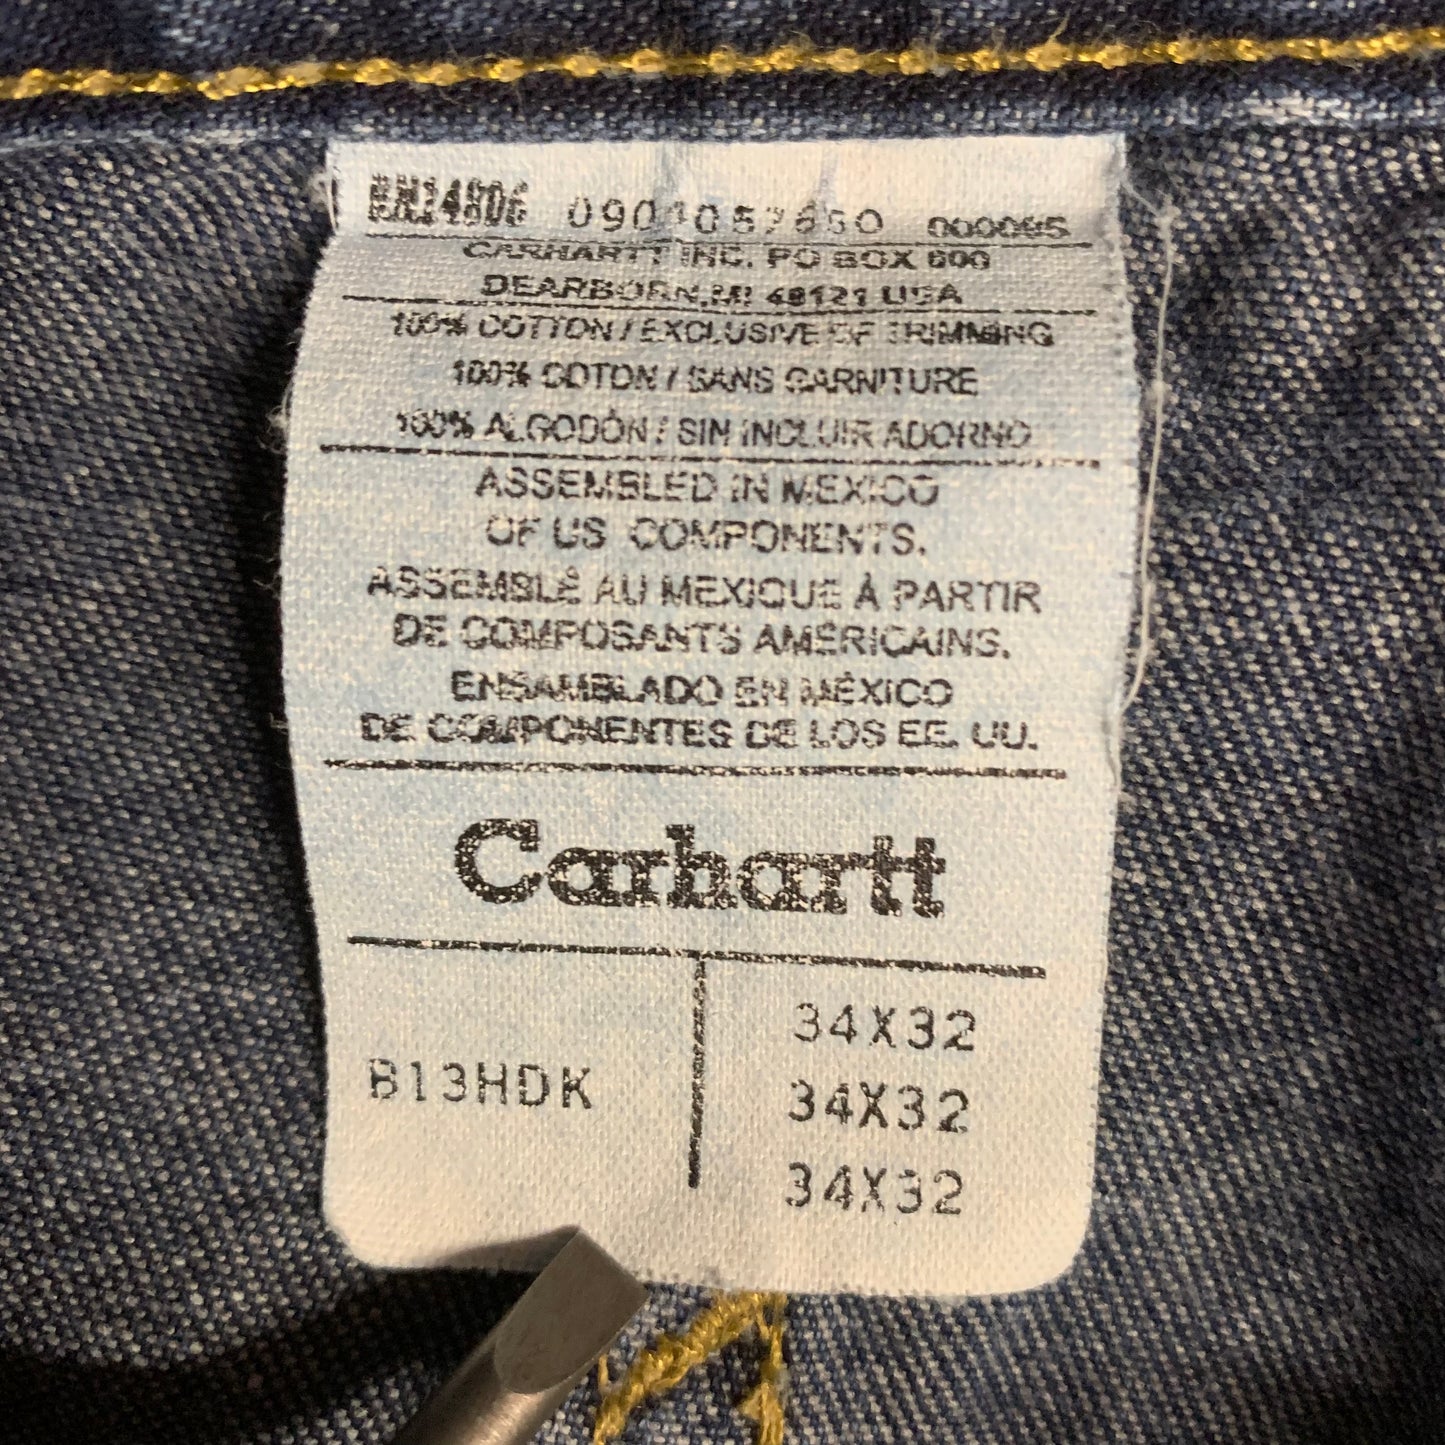 Carhartt Carpenter Jeans 34x32